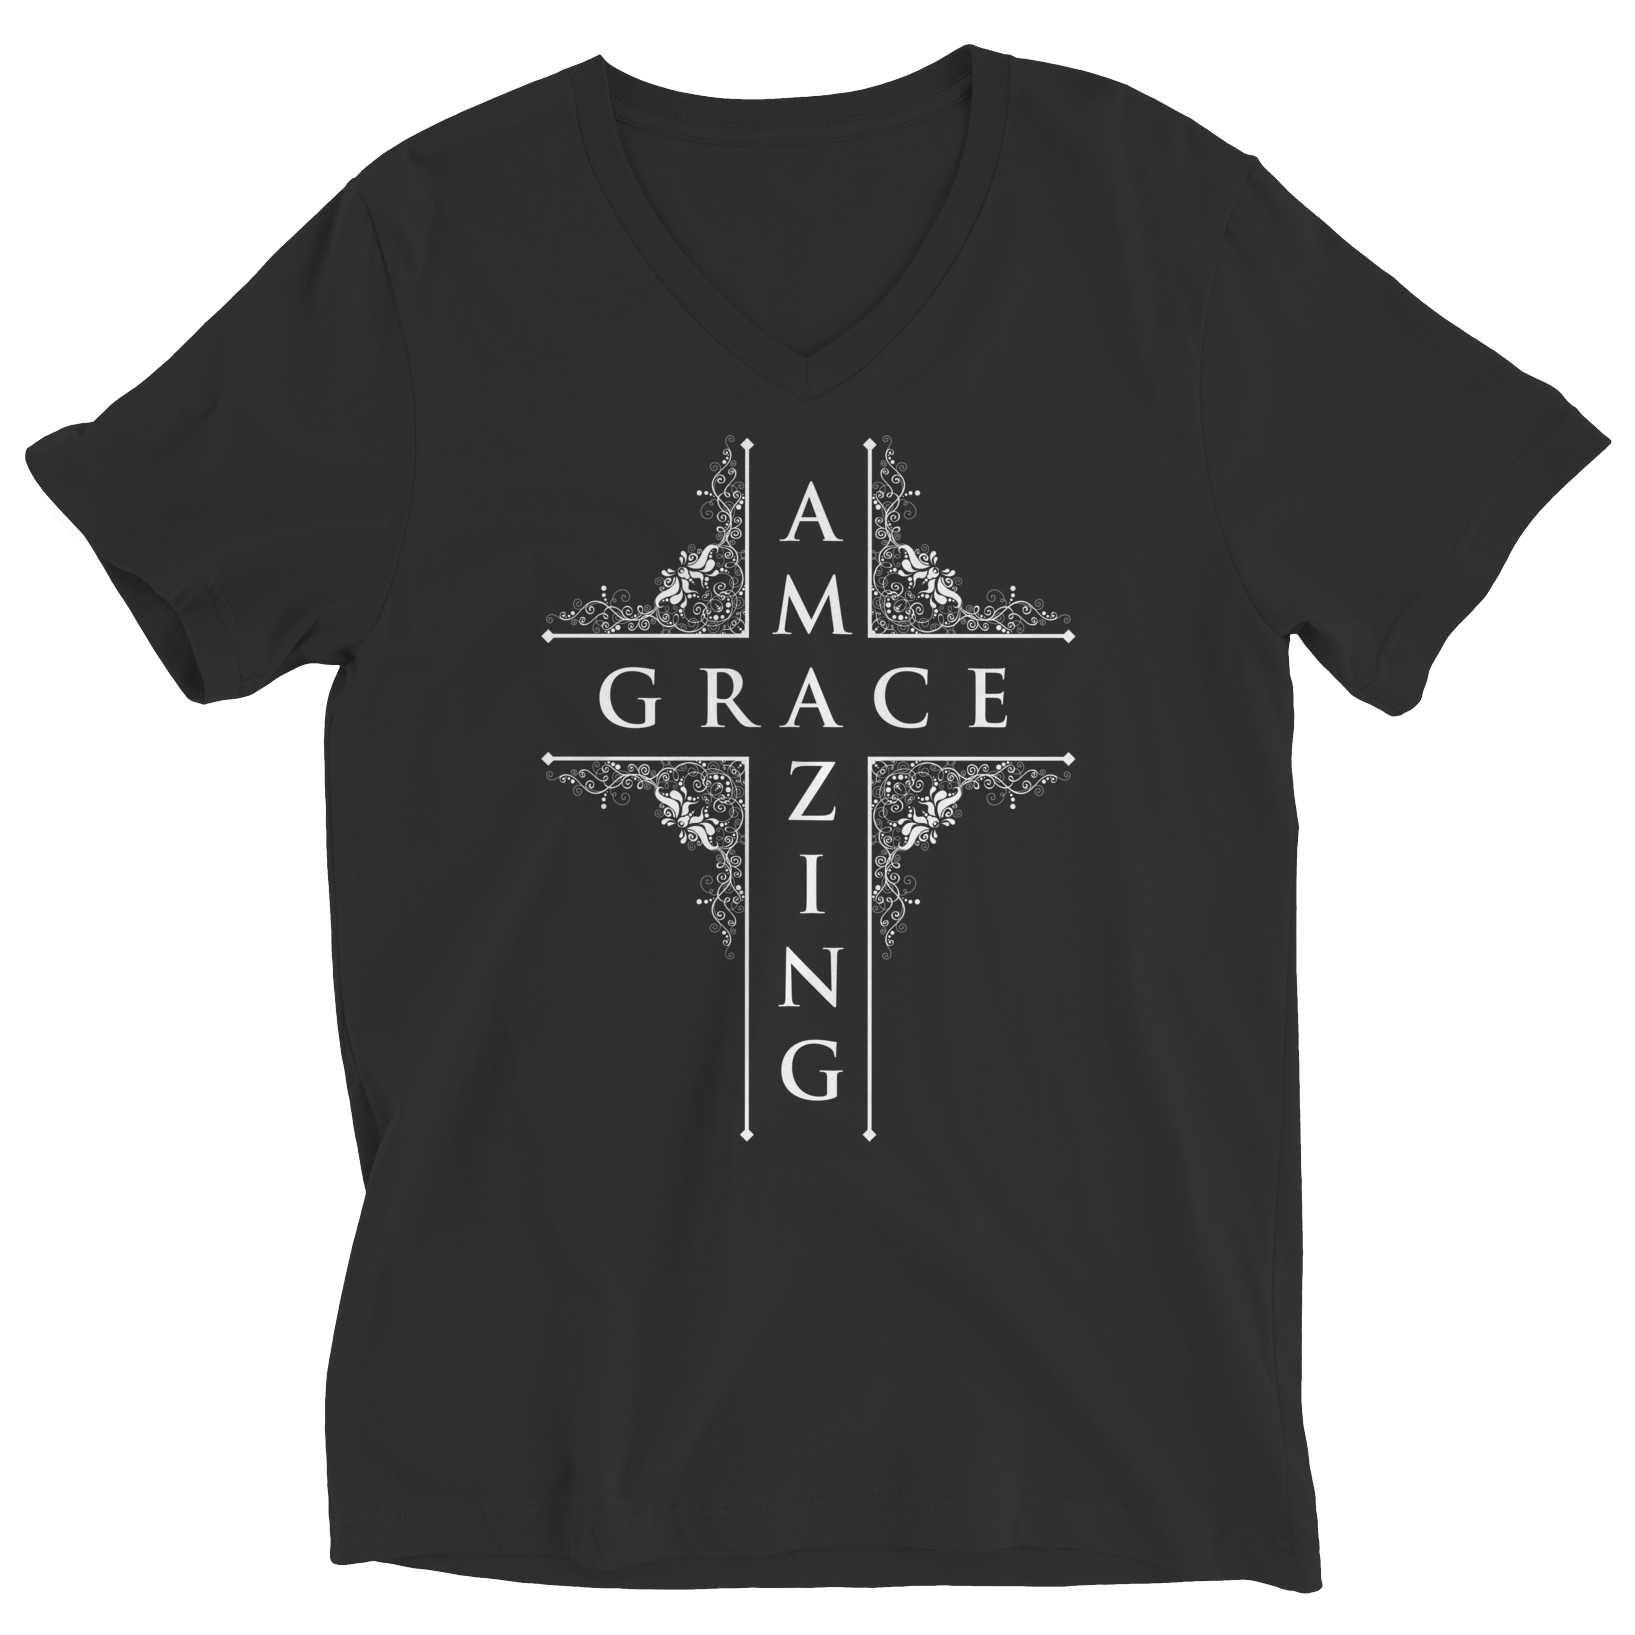 Unisex Shirt - Amazing Grace T-Shirt